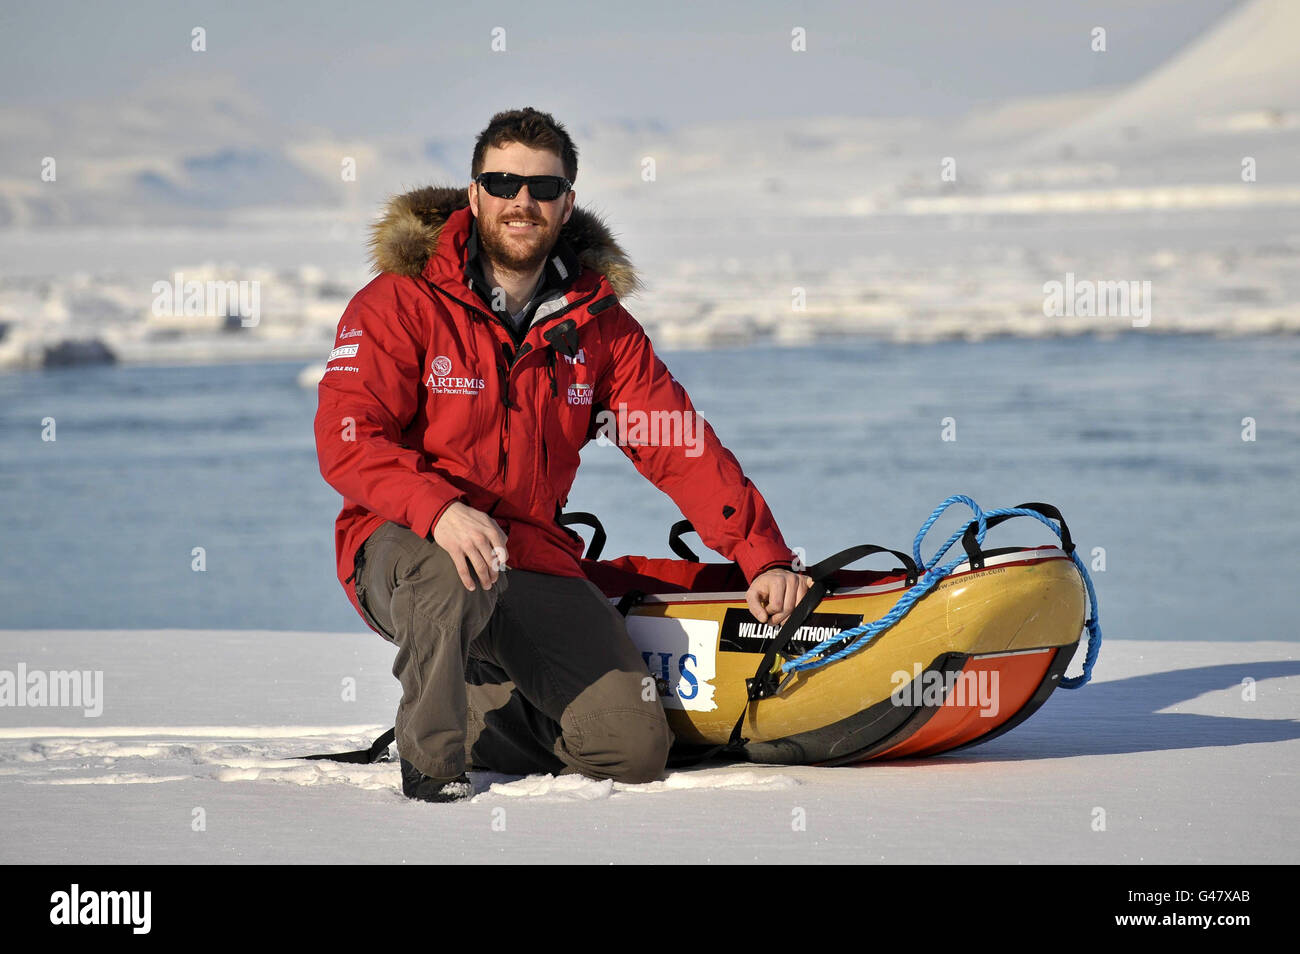 Il sergente dell'esercito britannico Stephen Young, che ha sofferto un servizio rotto in Afghanistan, ritorna a Longyearbyen, nelle isole artiche norewgiane di Svalbard, dopo un viaggio di successo al Polo Nord con la squadra 'Walking with the wiled' di militari feriti. Foto Stock